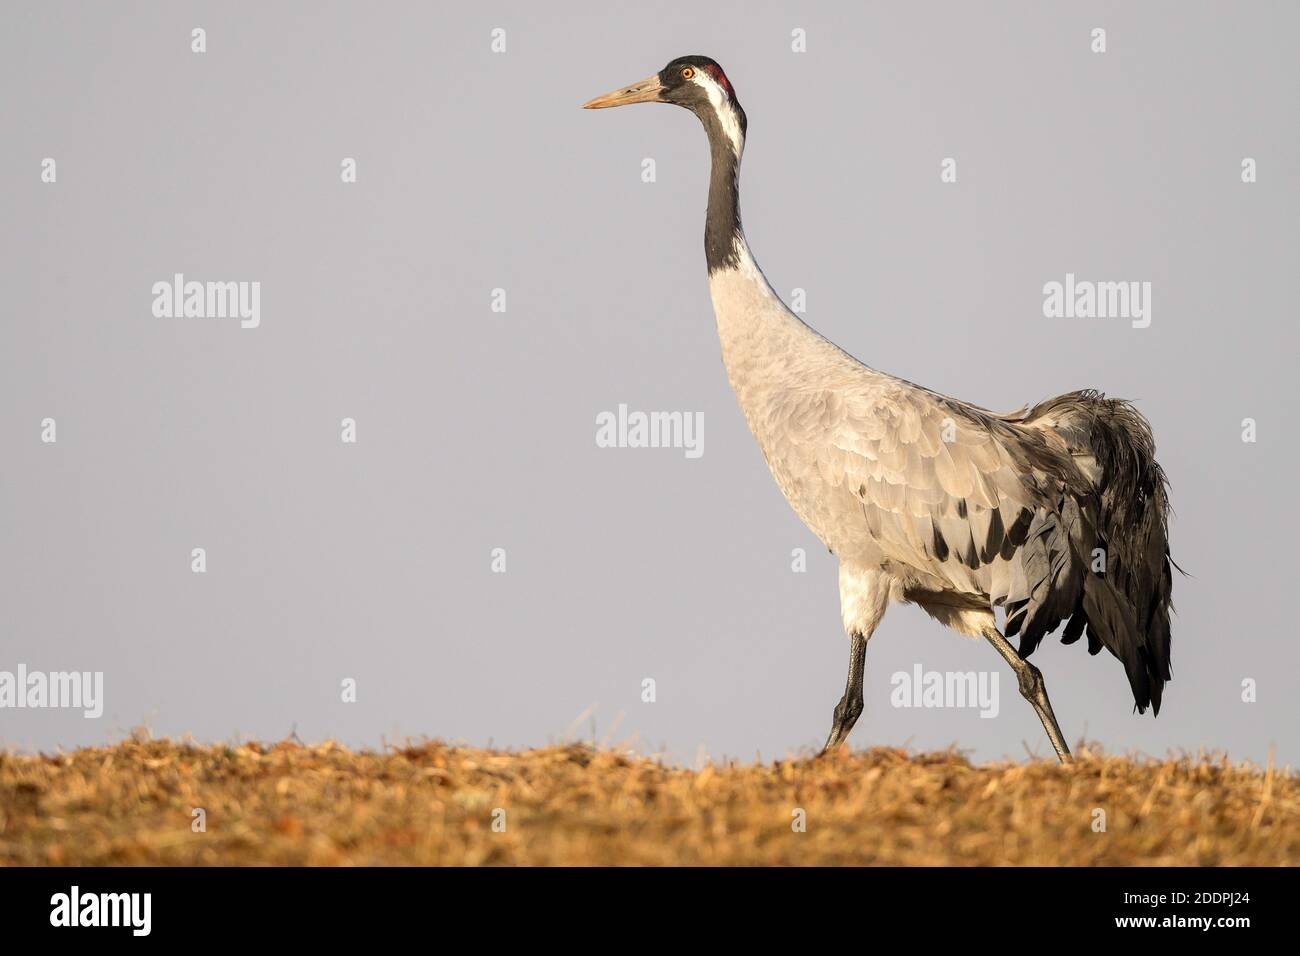 Common crane, Eurasian Crane (Grus grus), stalking, side view, Sweden, Vaestergoetland, Falkoeping Stock Photo